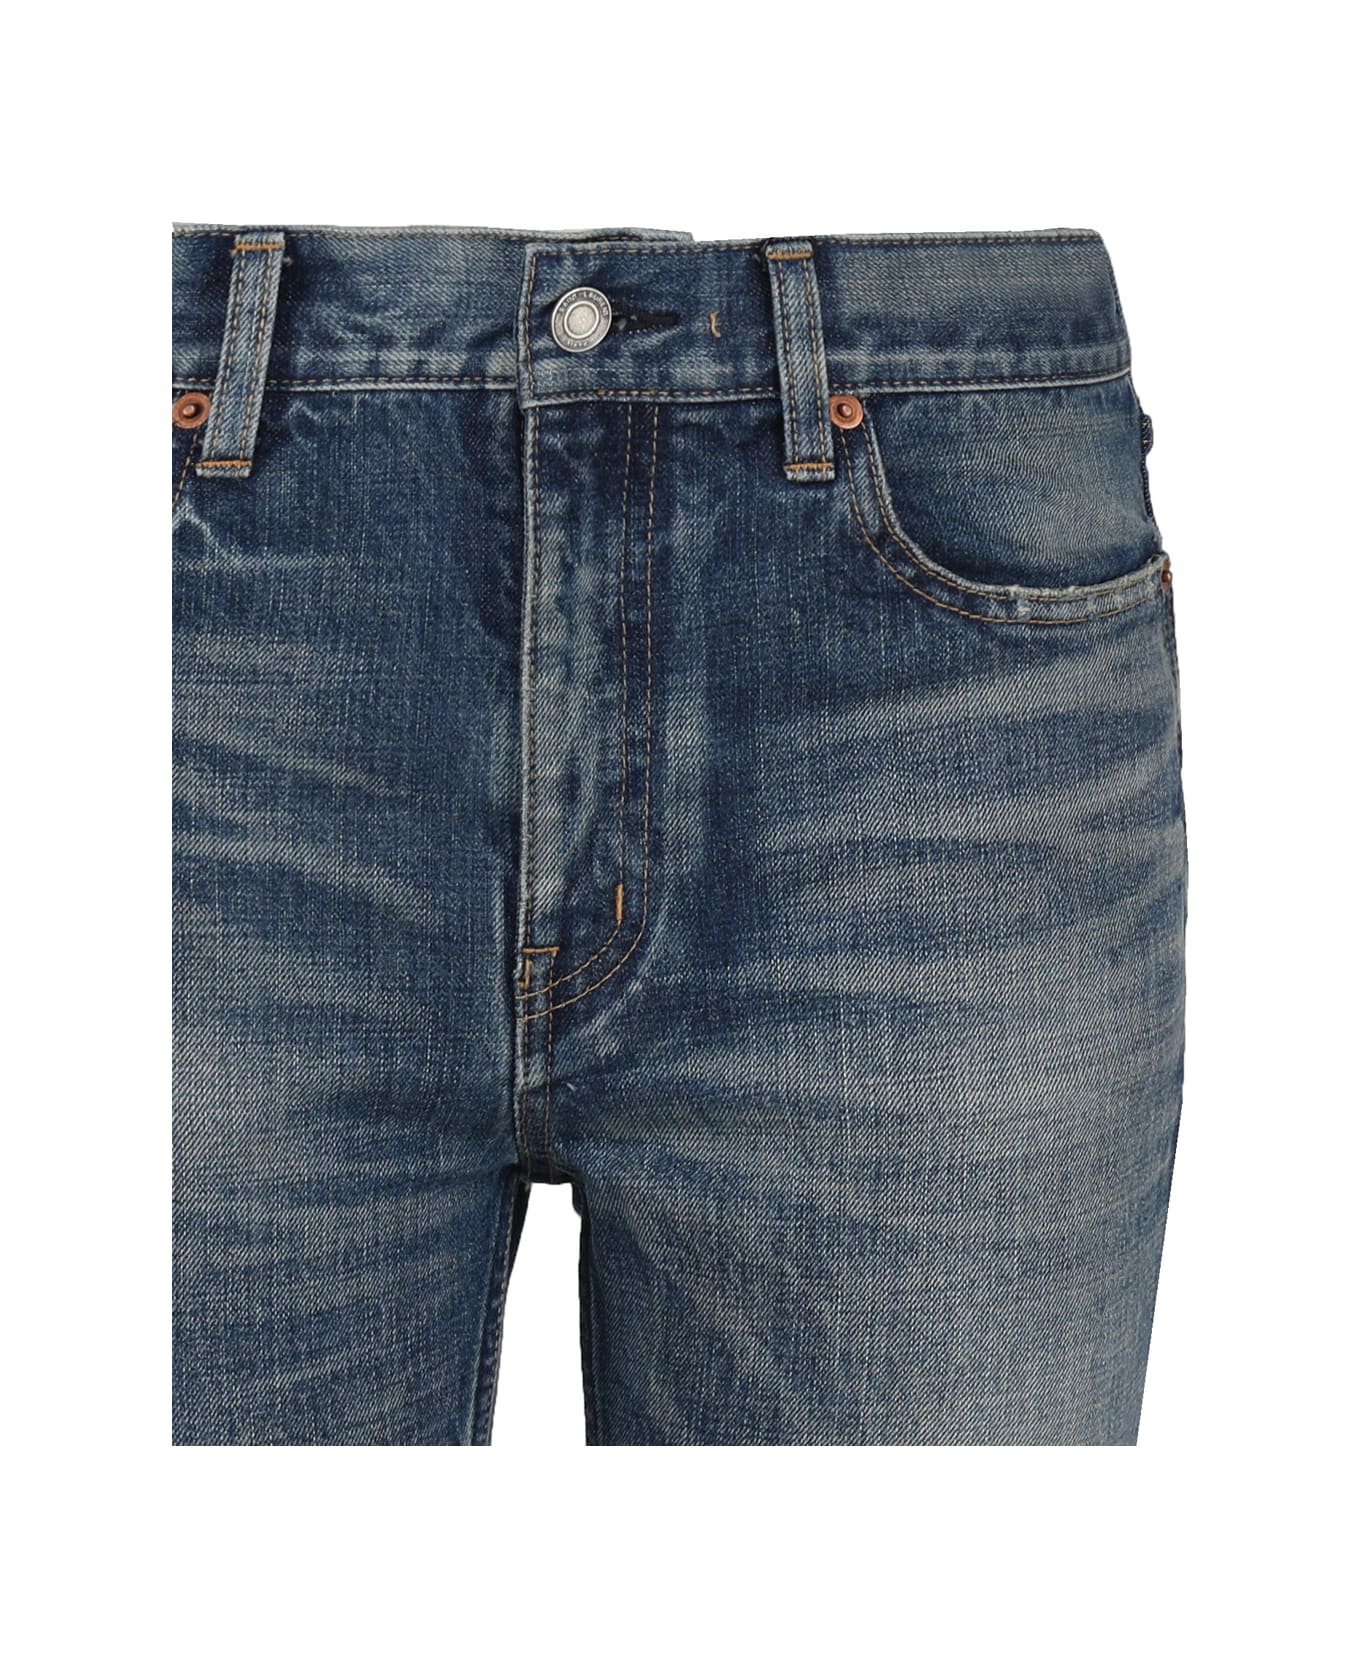 Saint Laurent Blue Denim Straight Leg Jeans - Authentic vintage bl